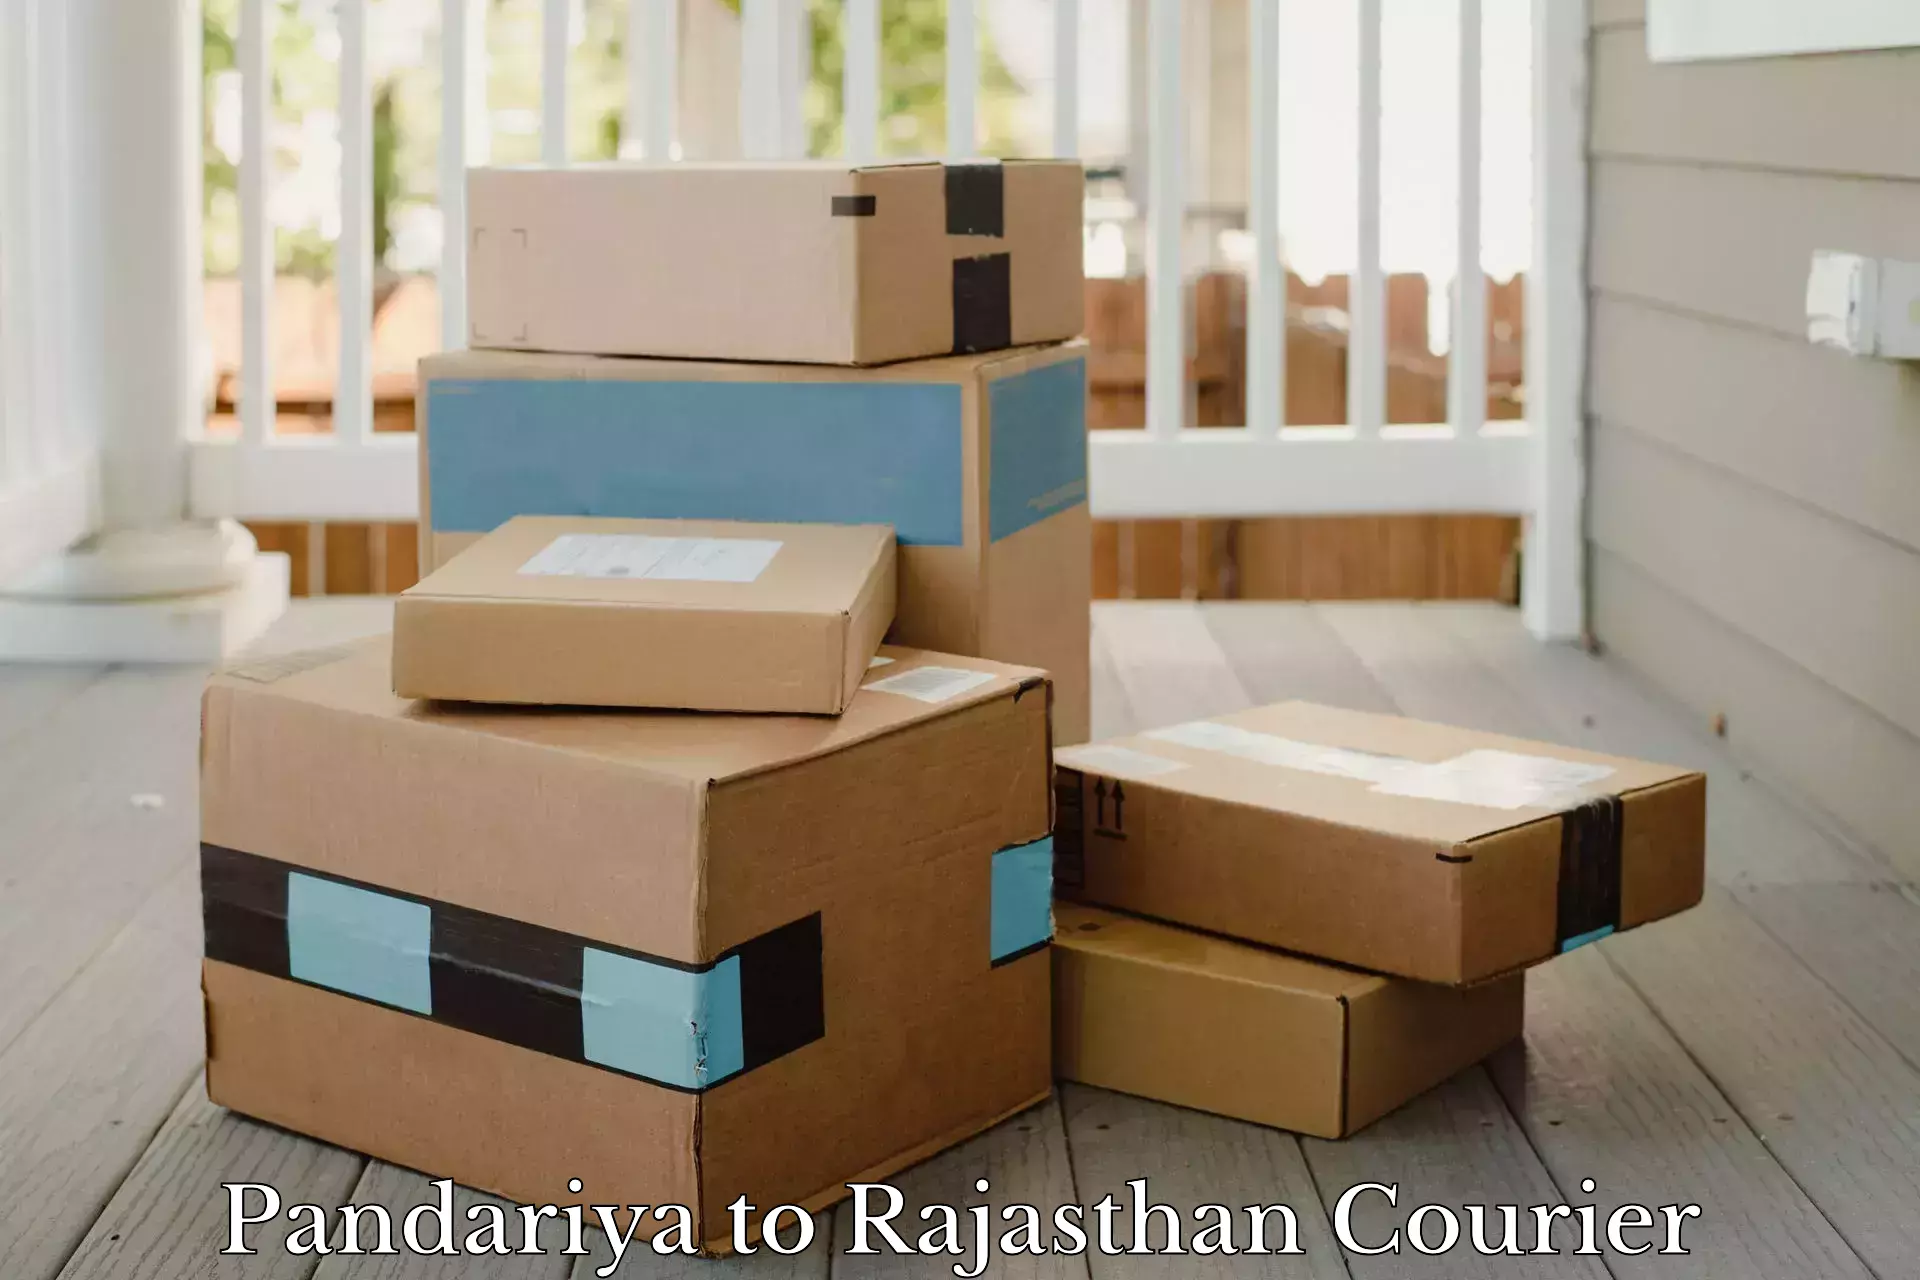 Courier service partnerships in Pandariya to Kumbhalgarh